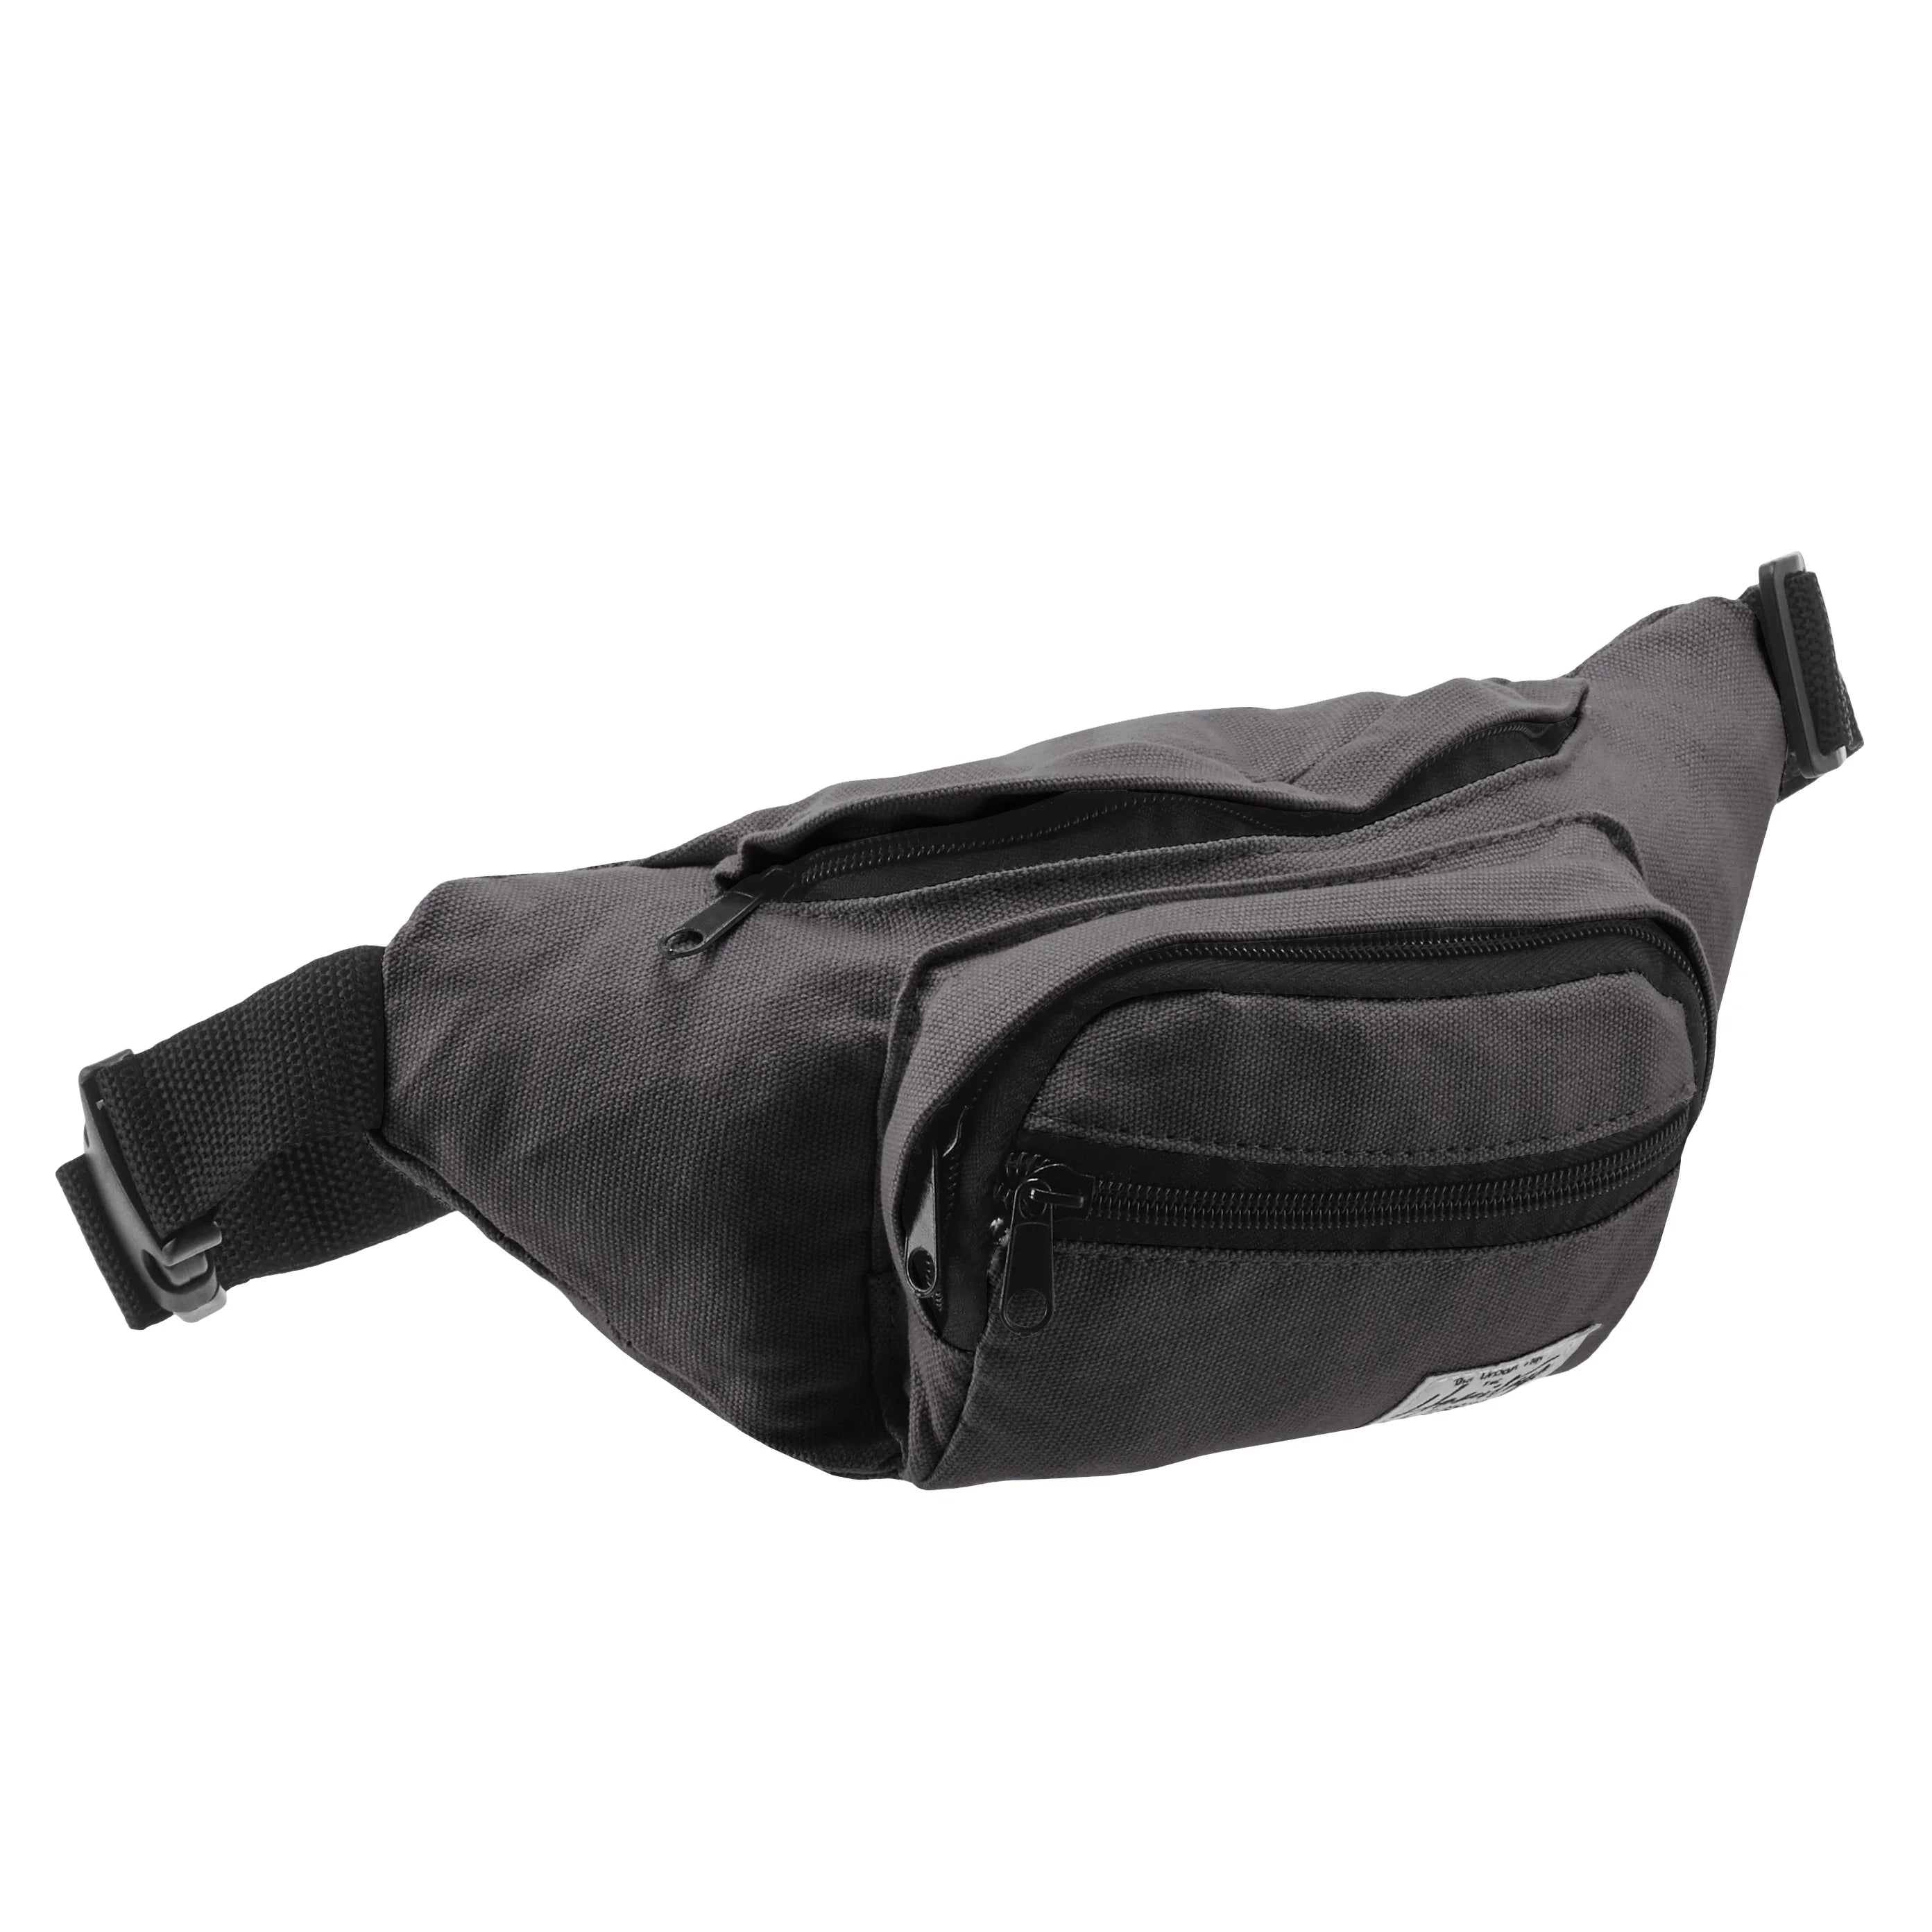 Nowi Heritage belt bag 26 cm - black